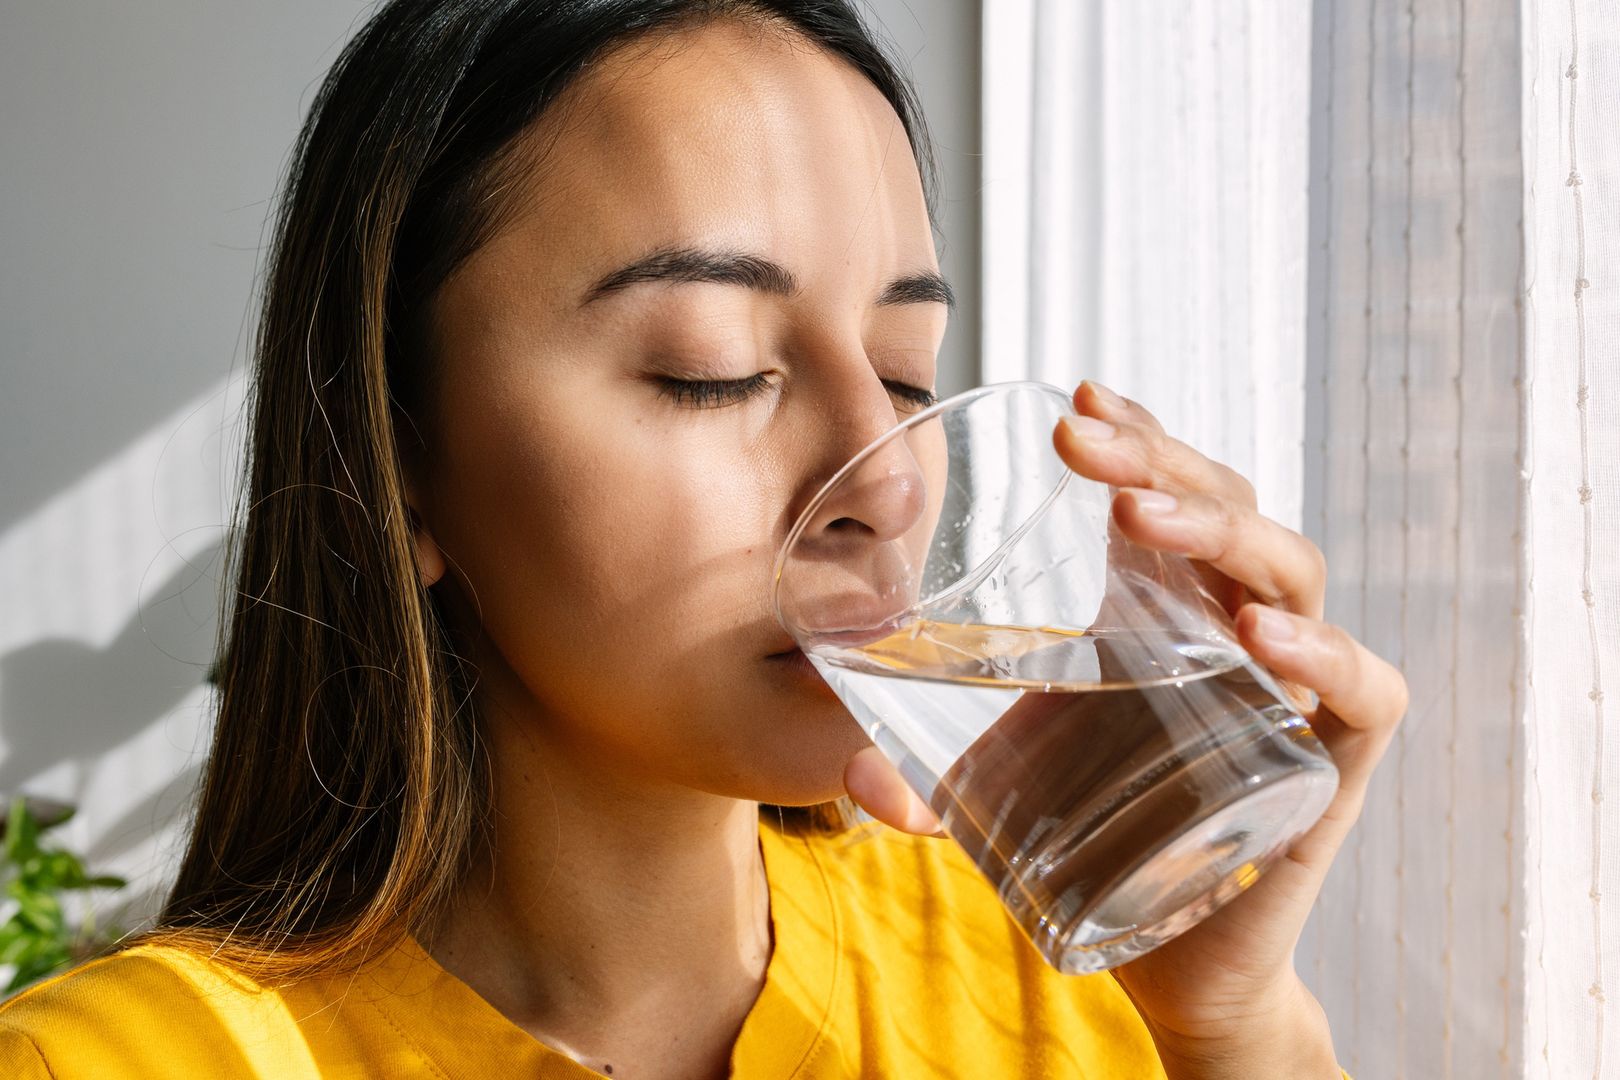 Naukowcy wskazali najlepiej nawadniający napój. Woda daleko z tyłu